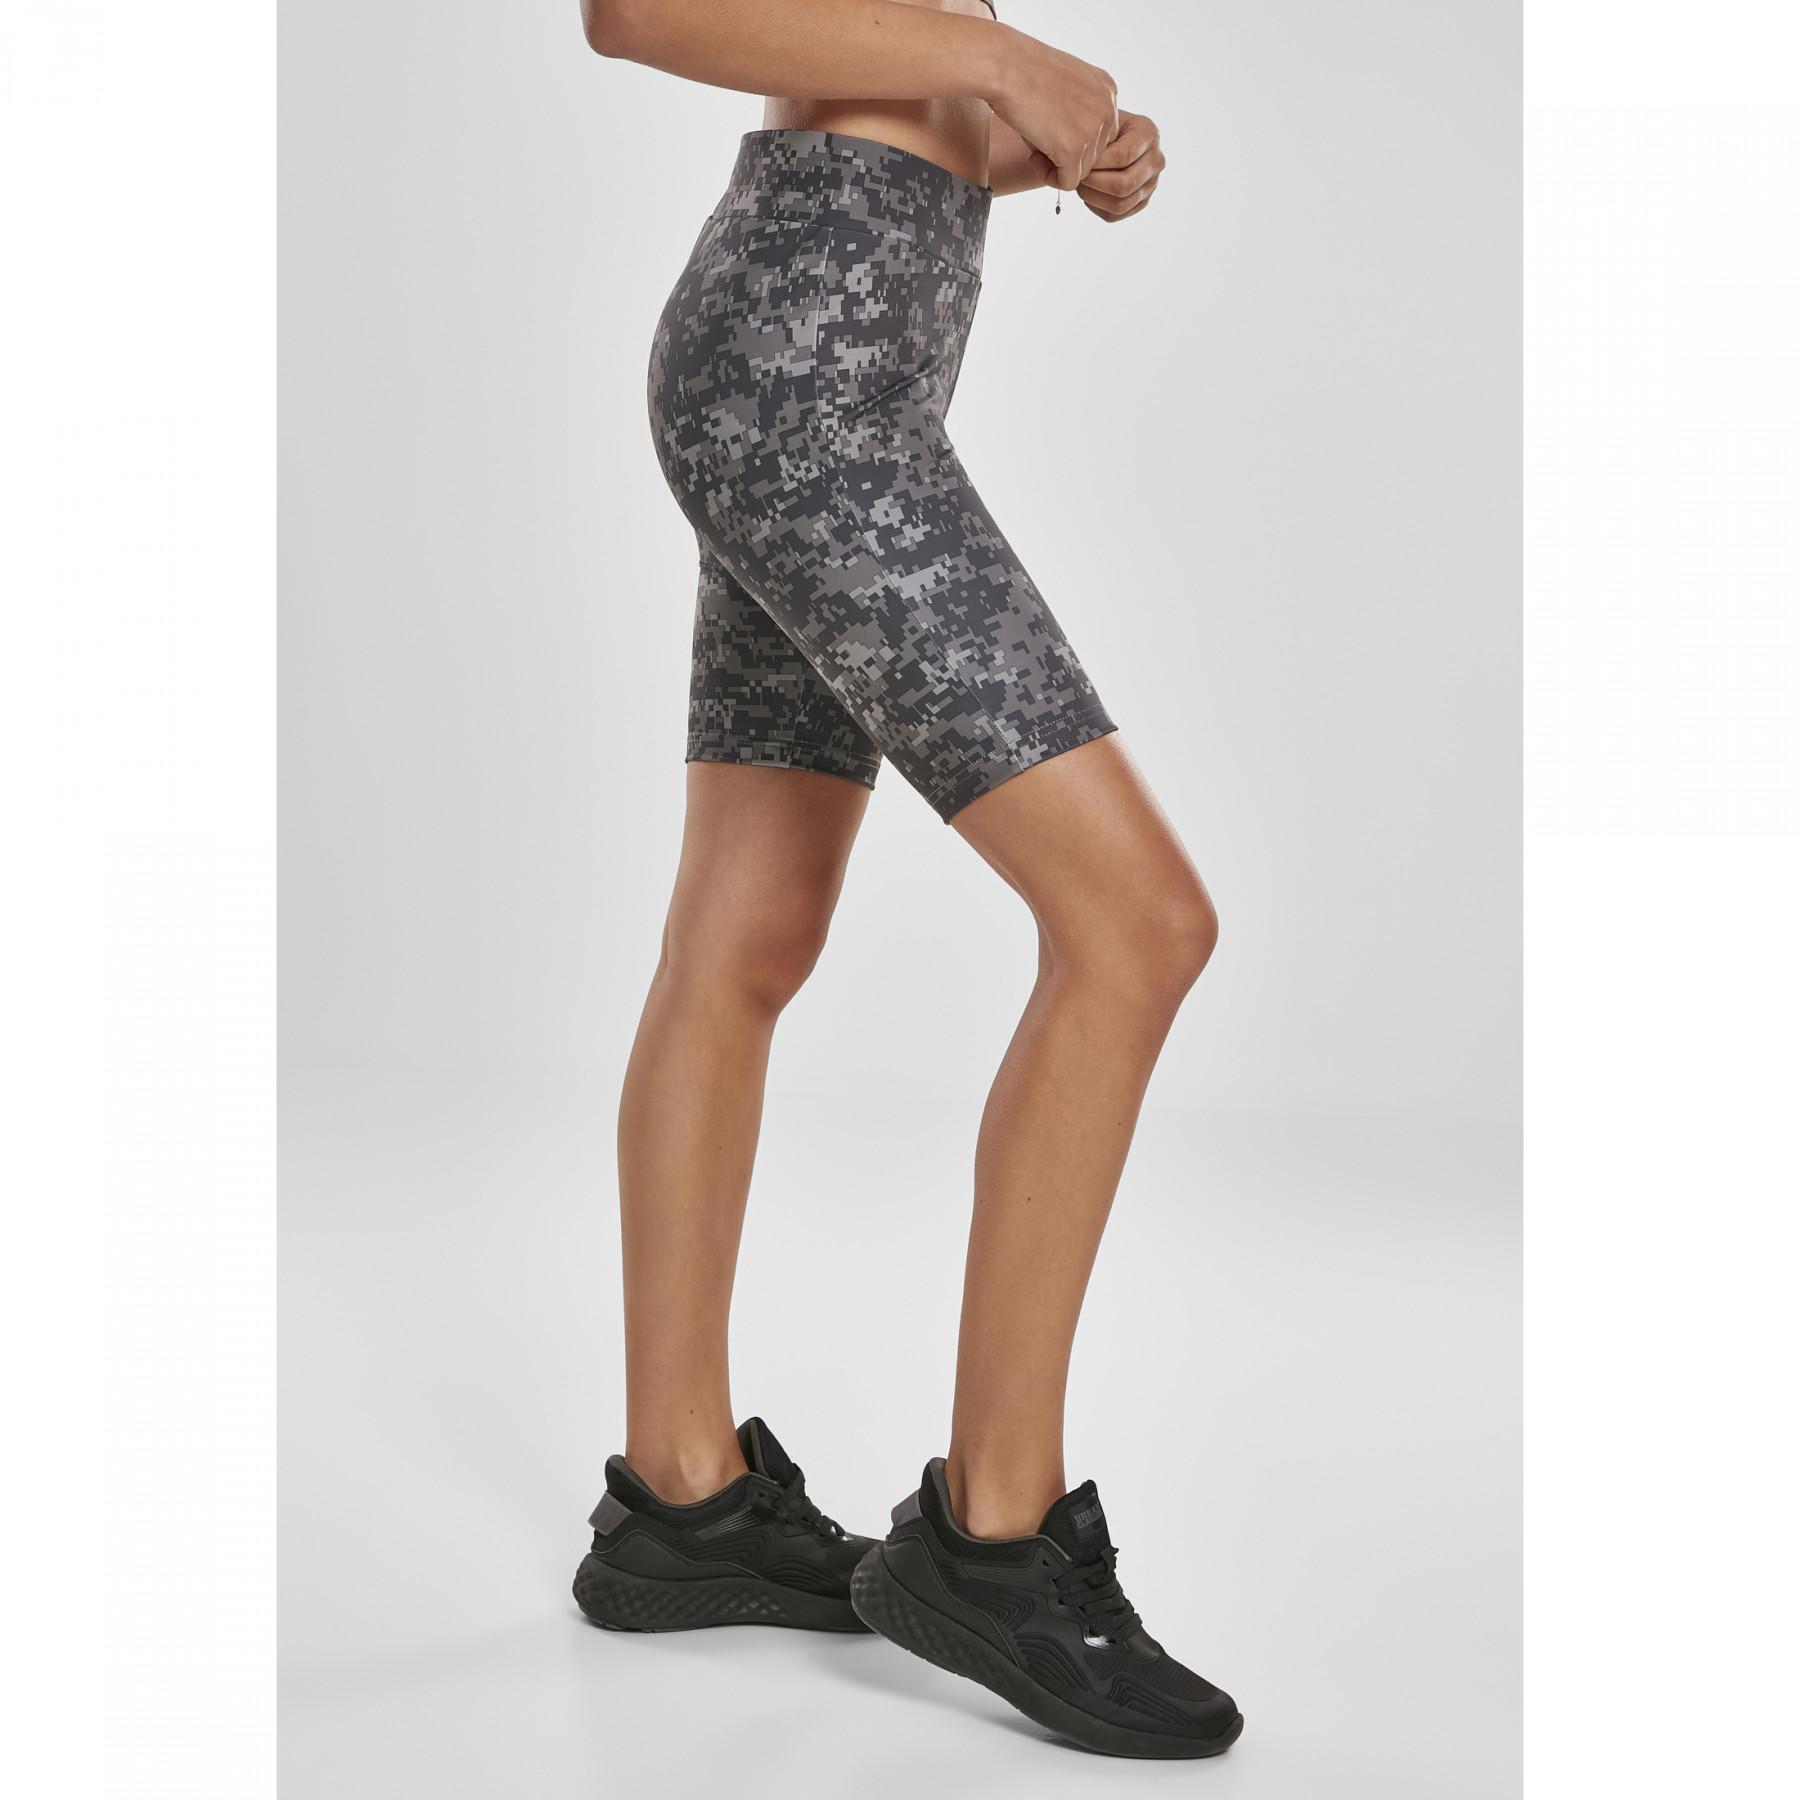 Cycling shorts for waist camo Classics Clothing - Shorts Women\'s Urban tech - women high